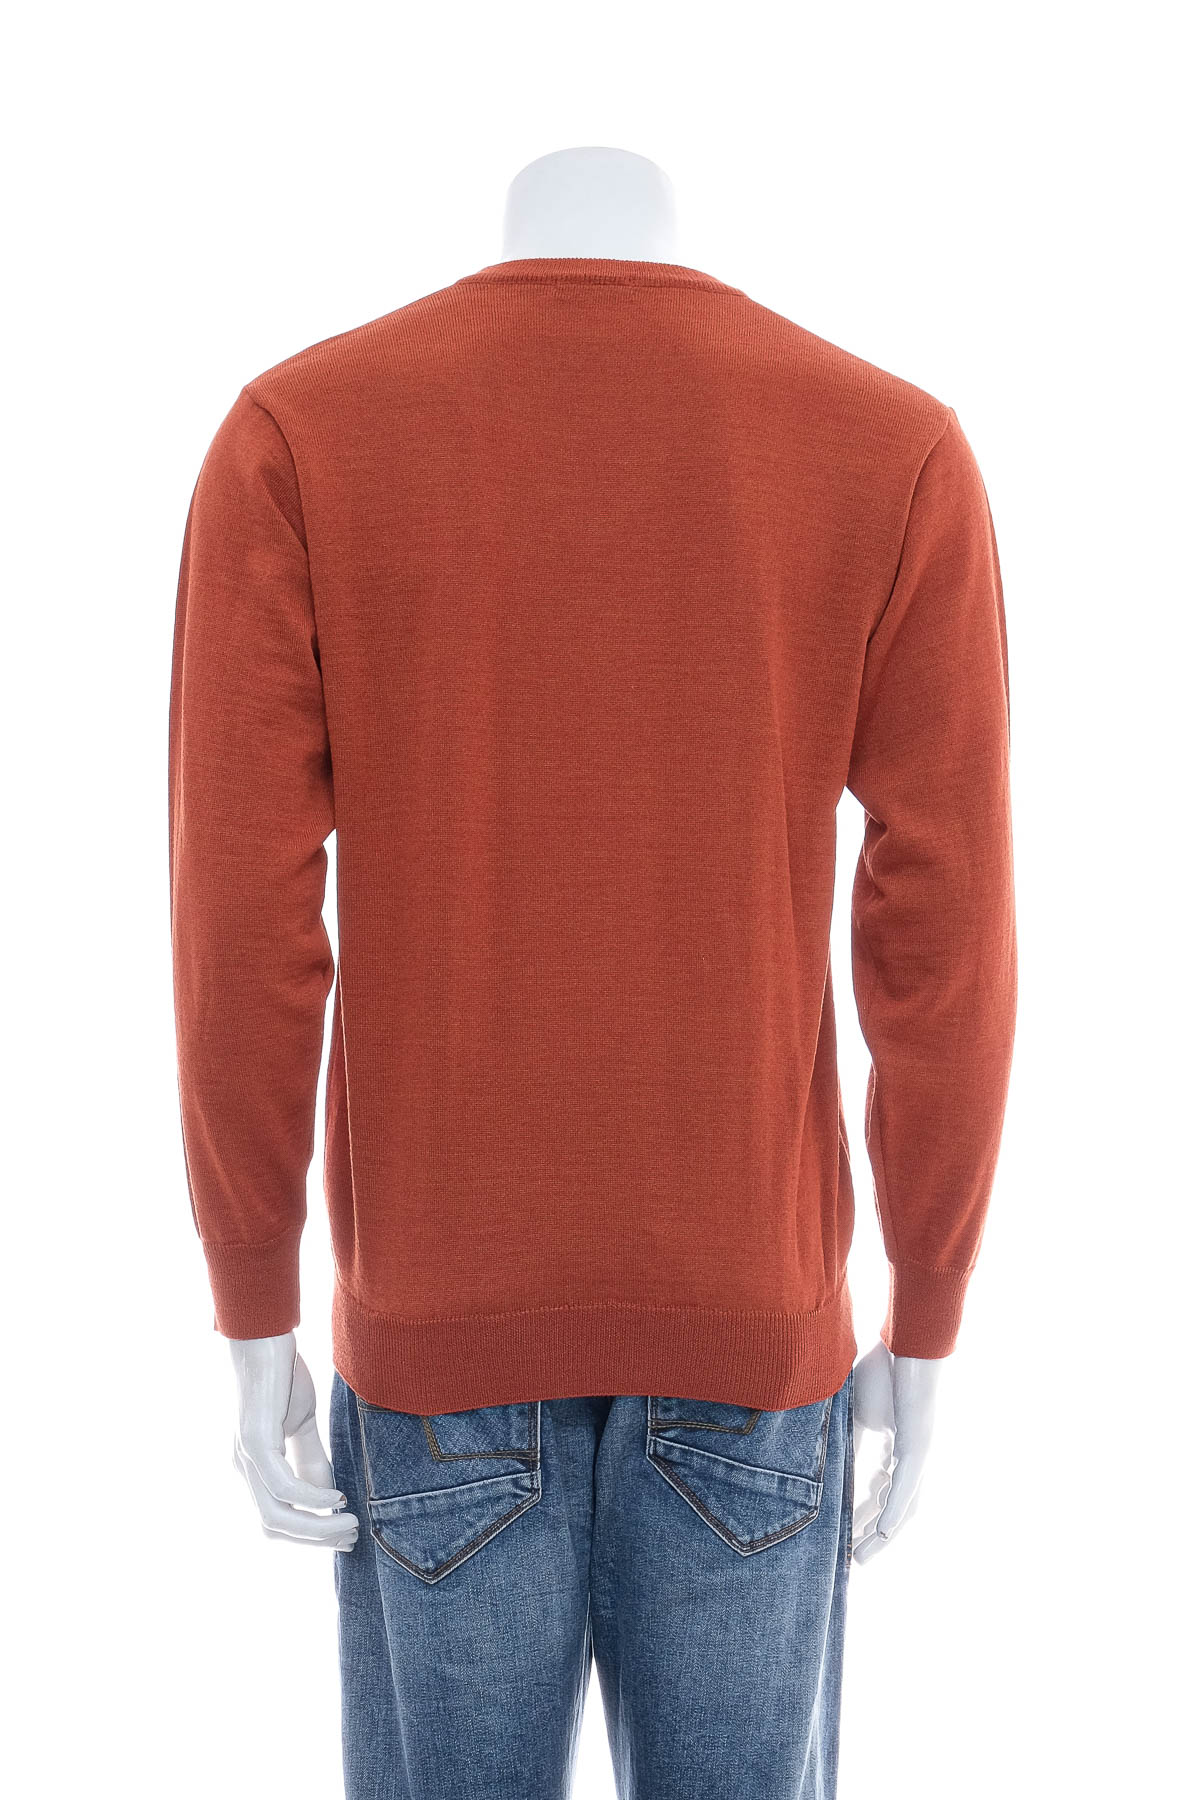 Men's sweater - BELIKA - 1